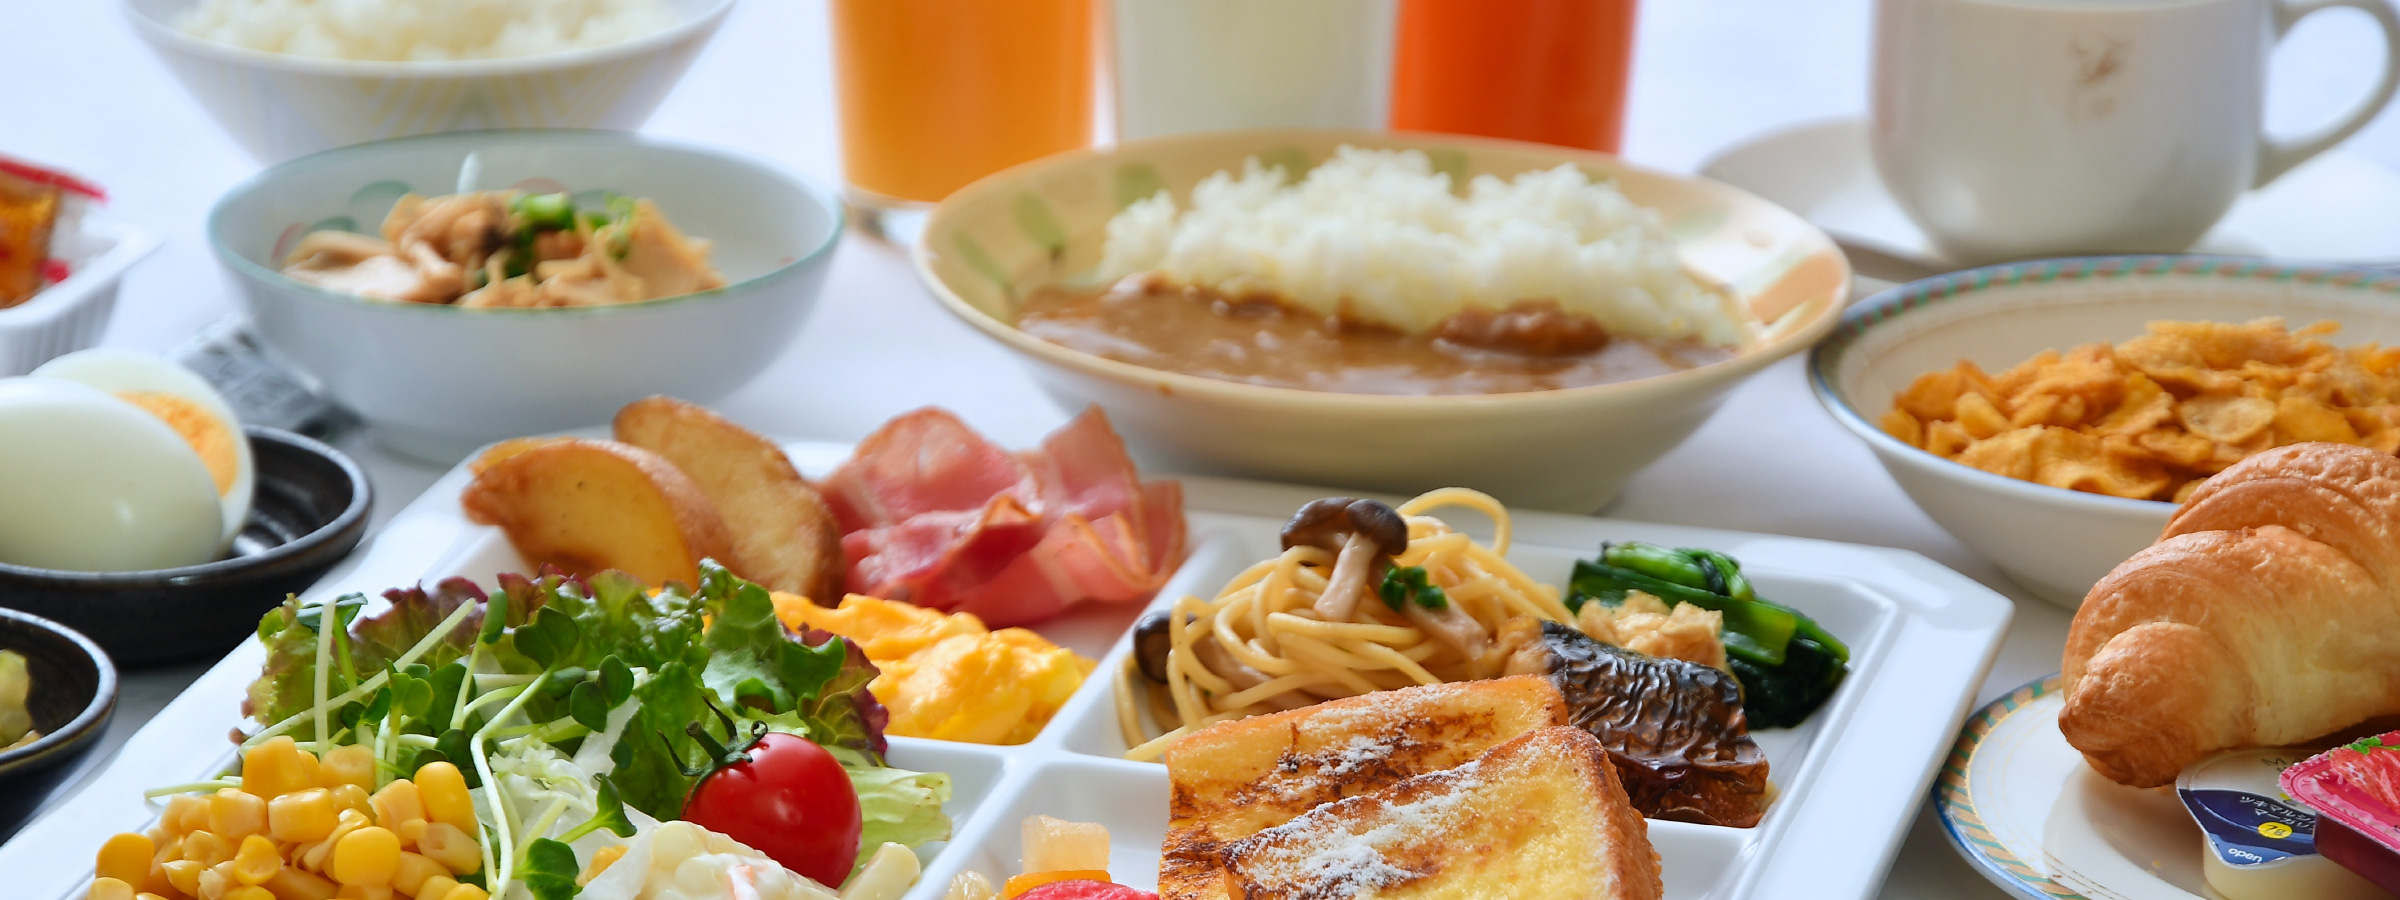 ホテルリステル新宿朝食